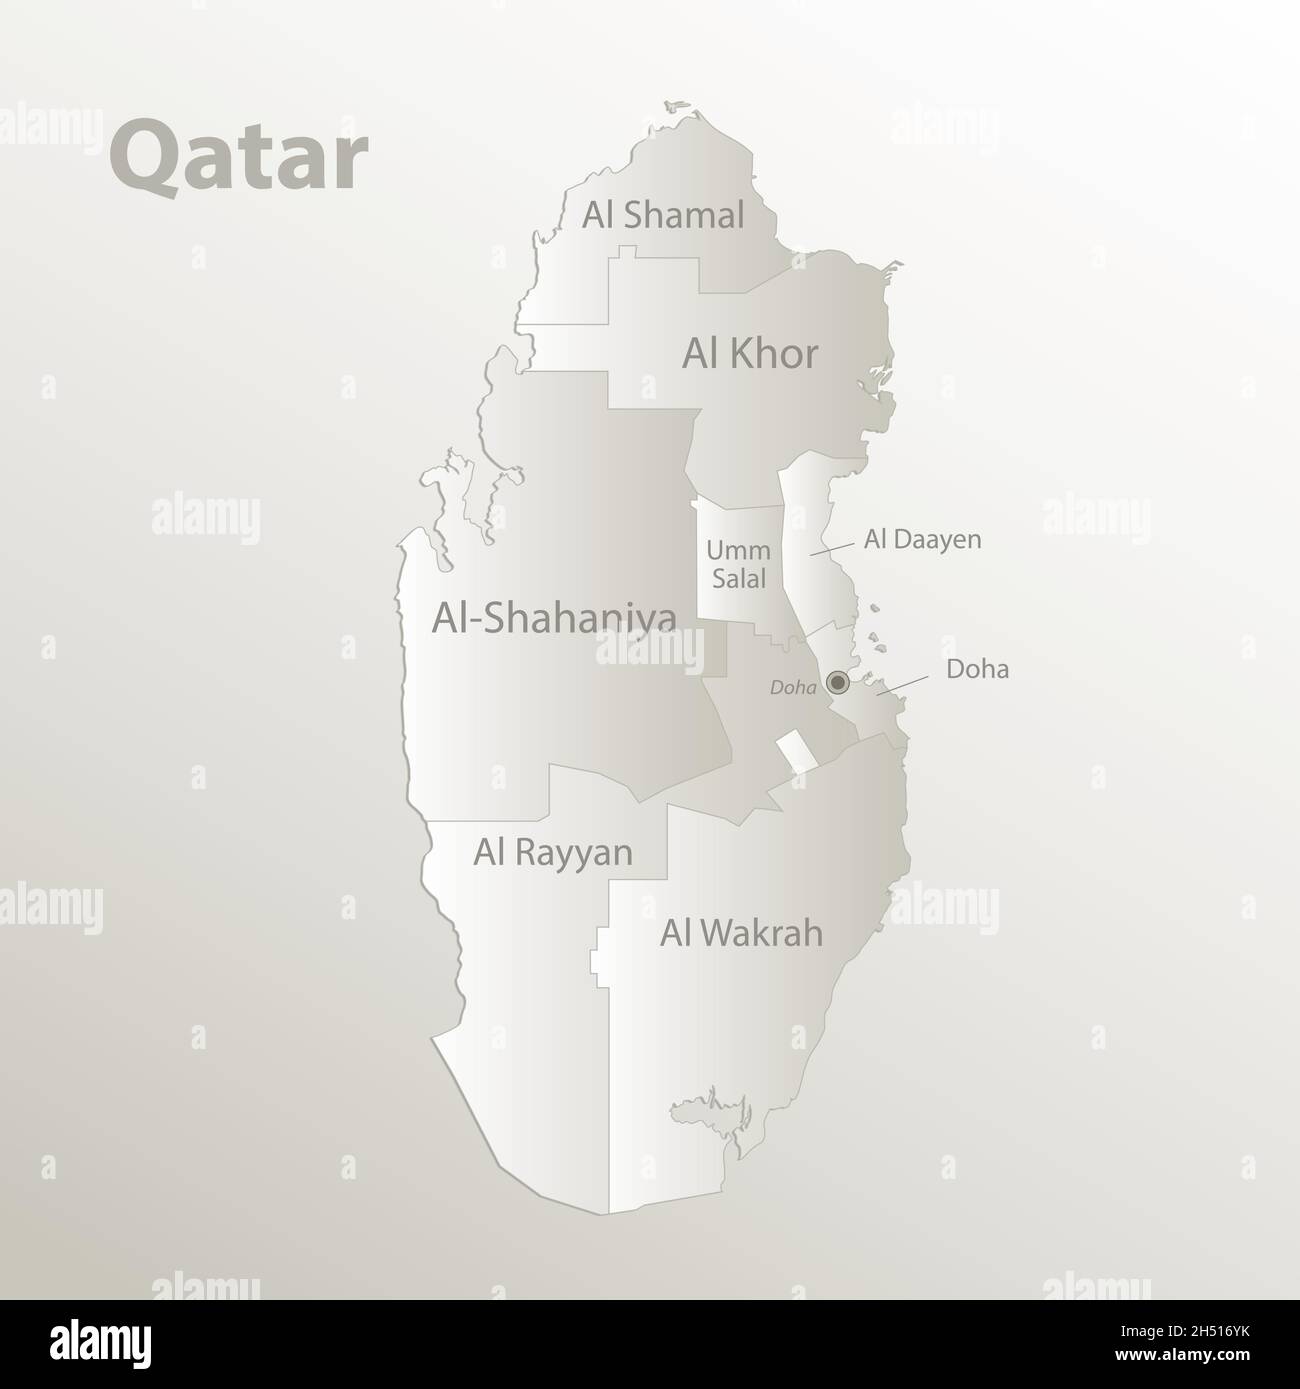 Mappa del Qatar, divisione amministrativa, separa regioni e nomi individuali, carta da cartolina 3D natural vettoriale Illustrazione Vettoriale